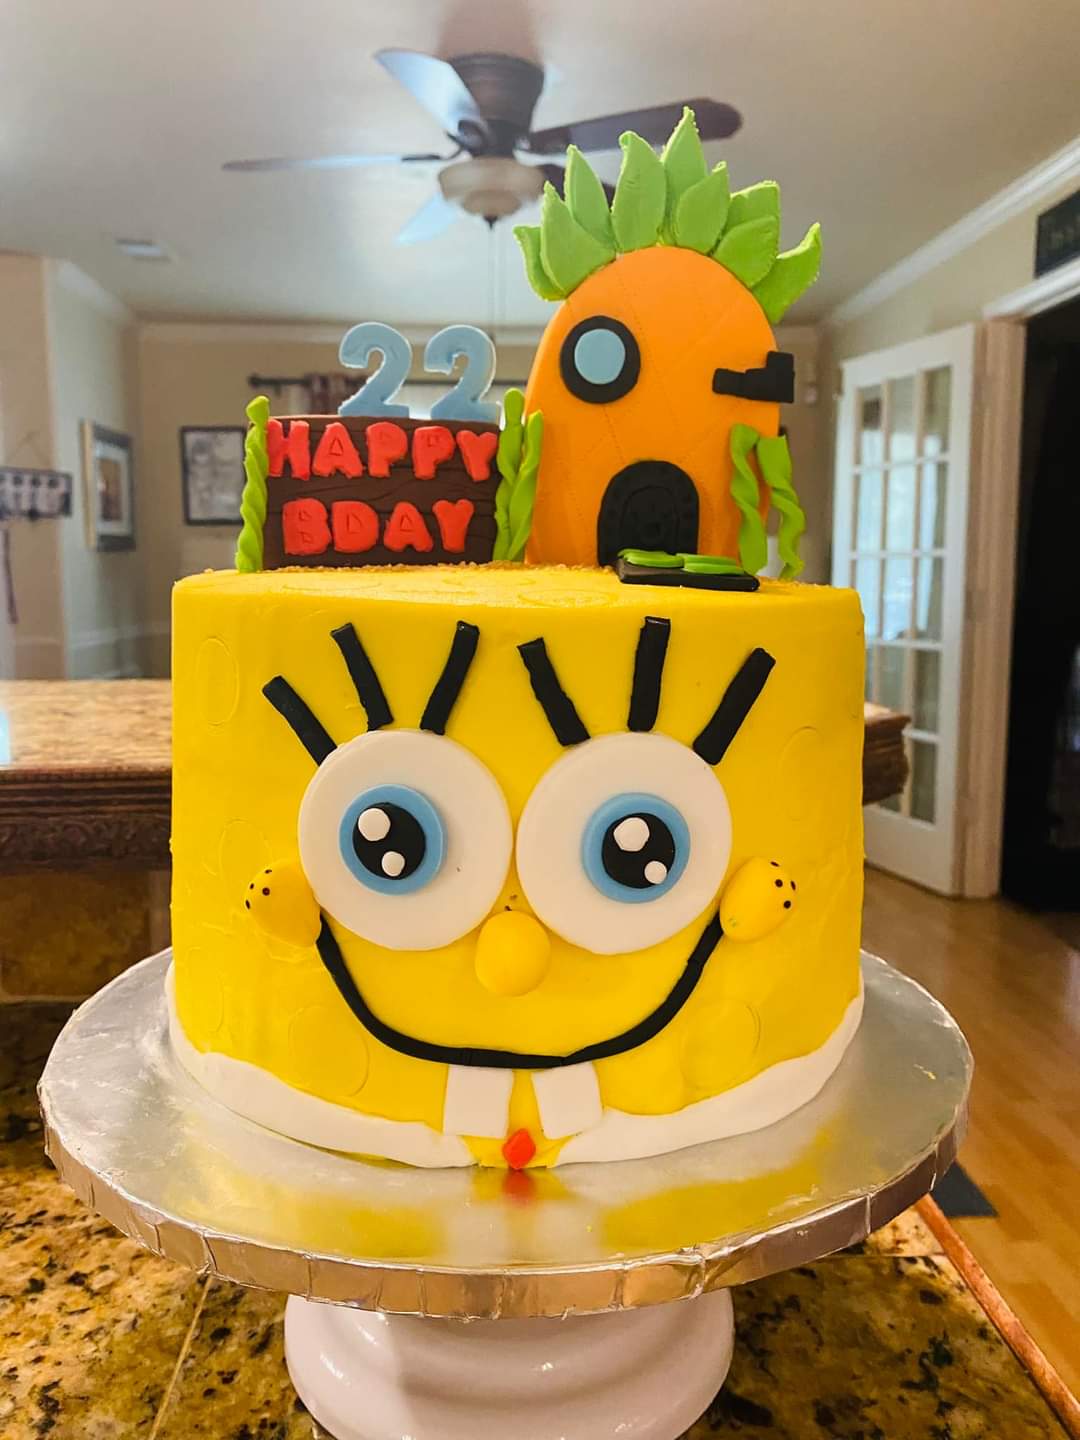 A SpongeBob cake